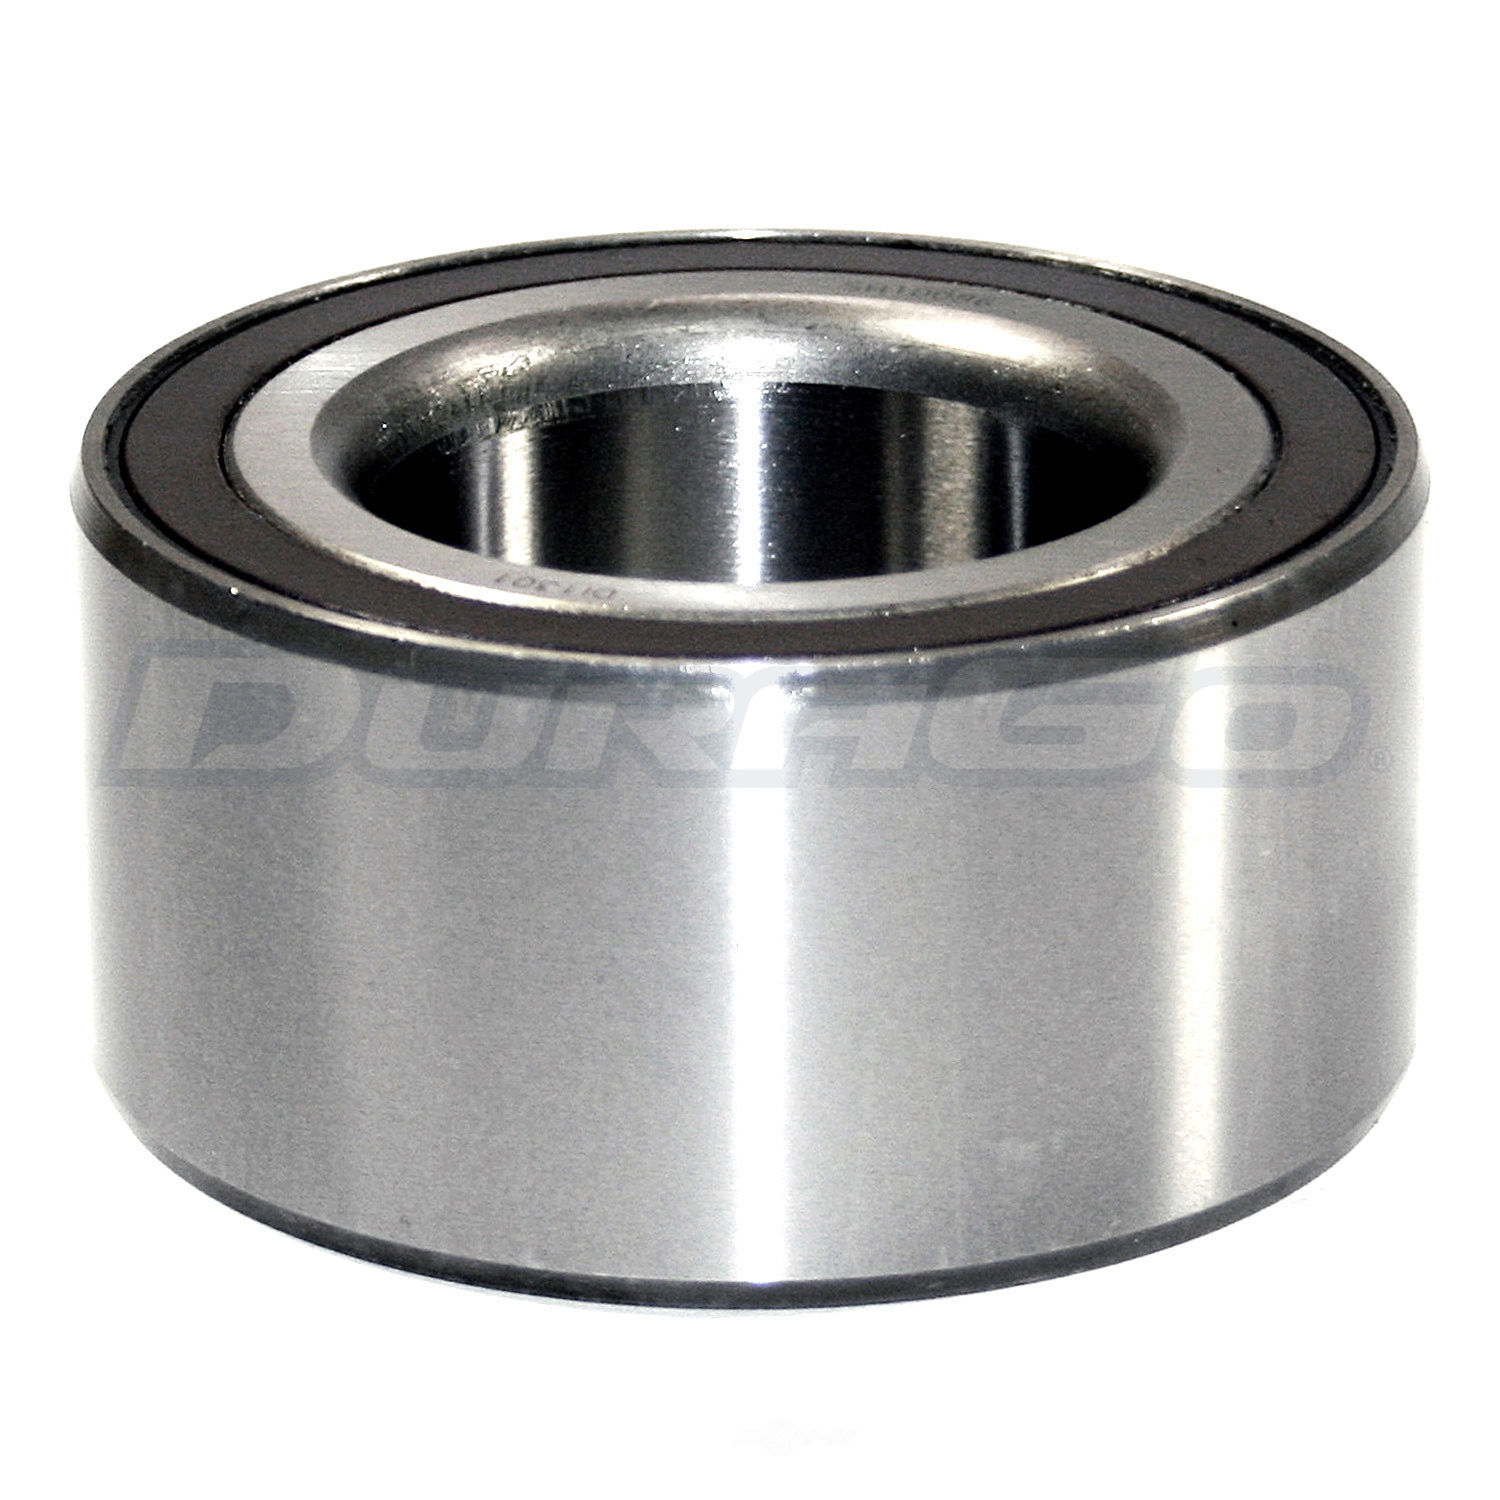 DURAGO - Wheel Bearing - D48 295-10086